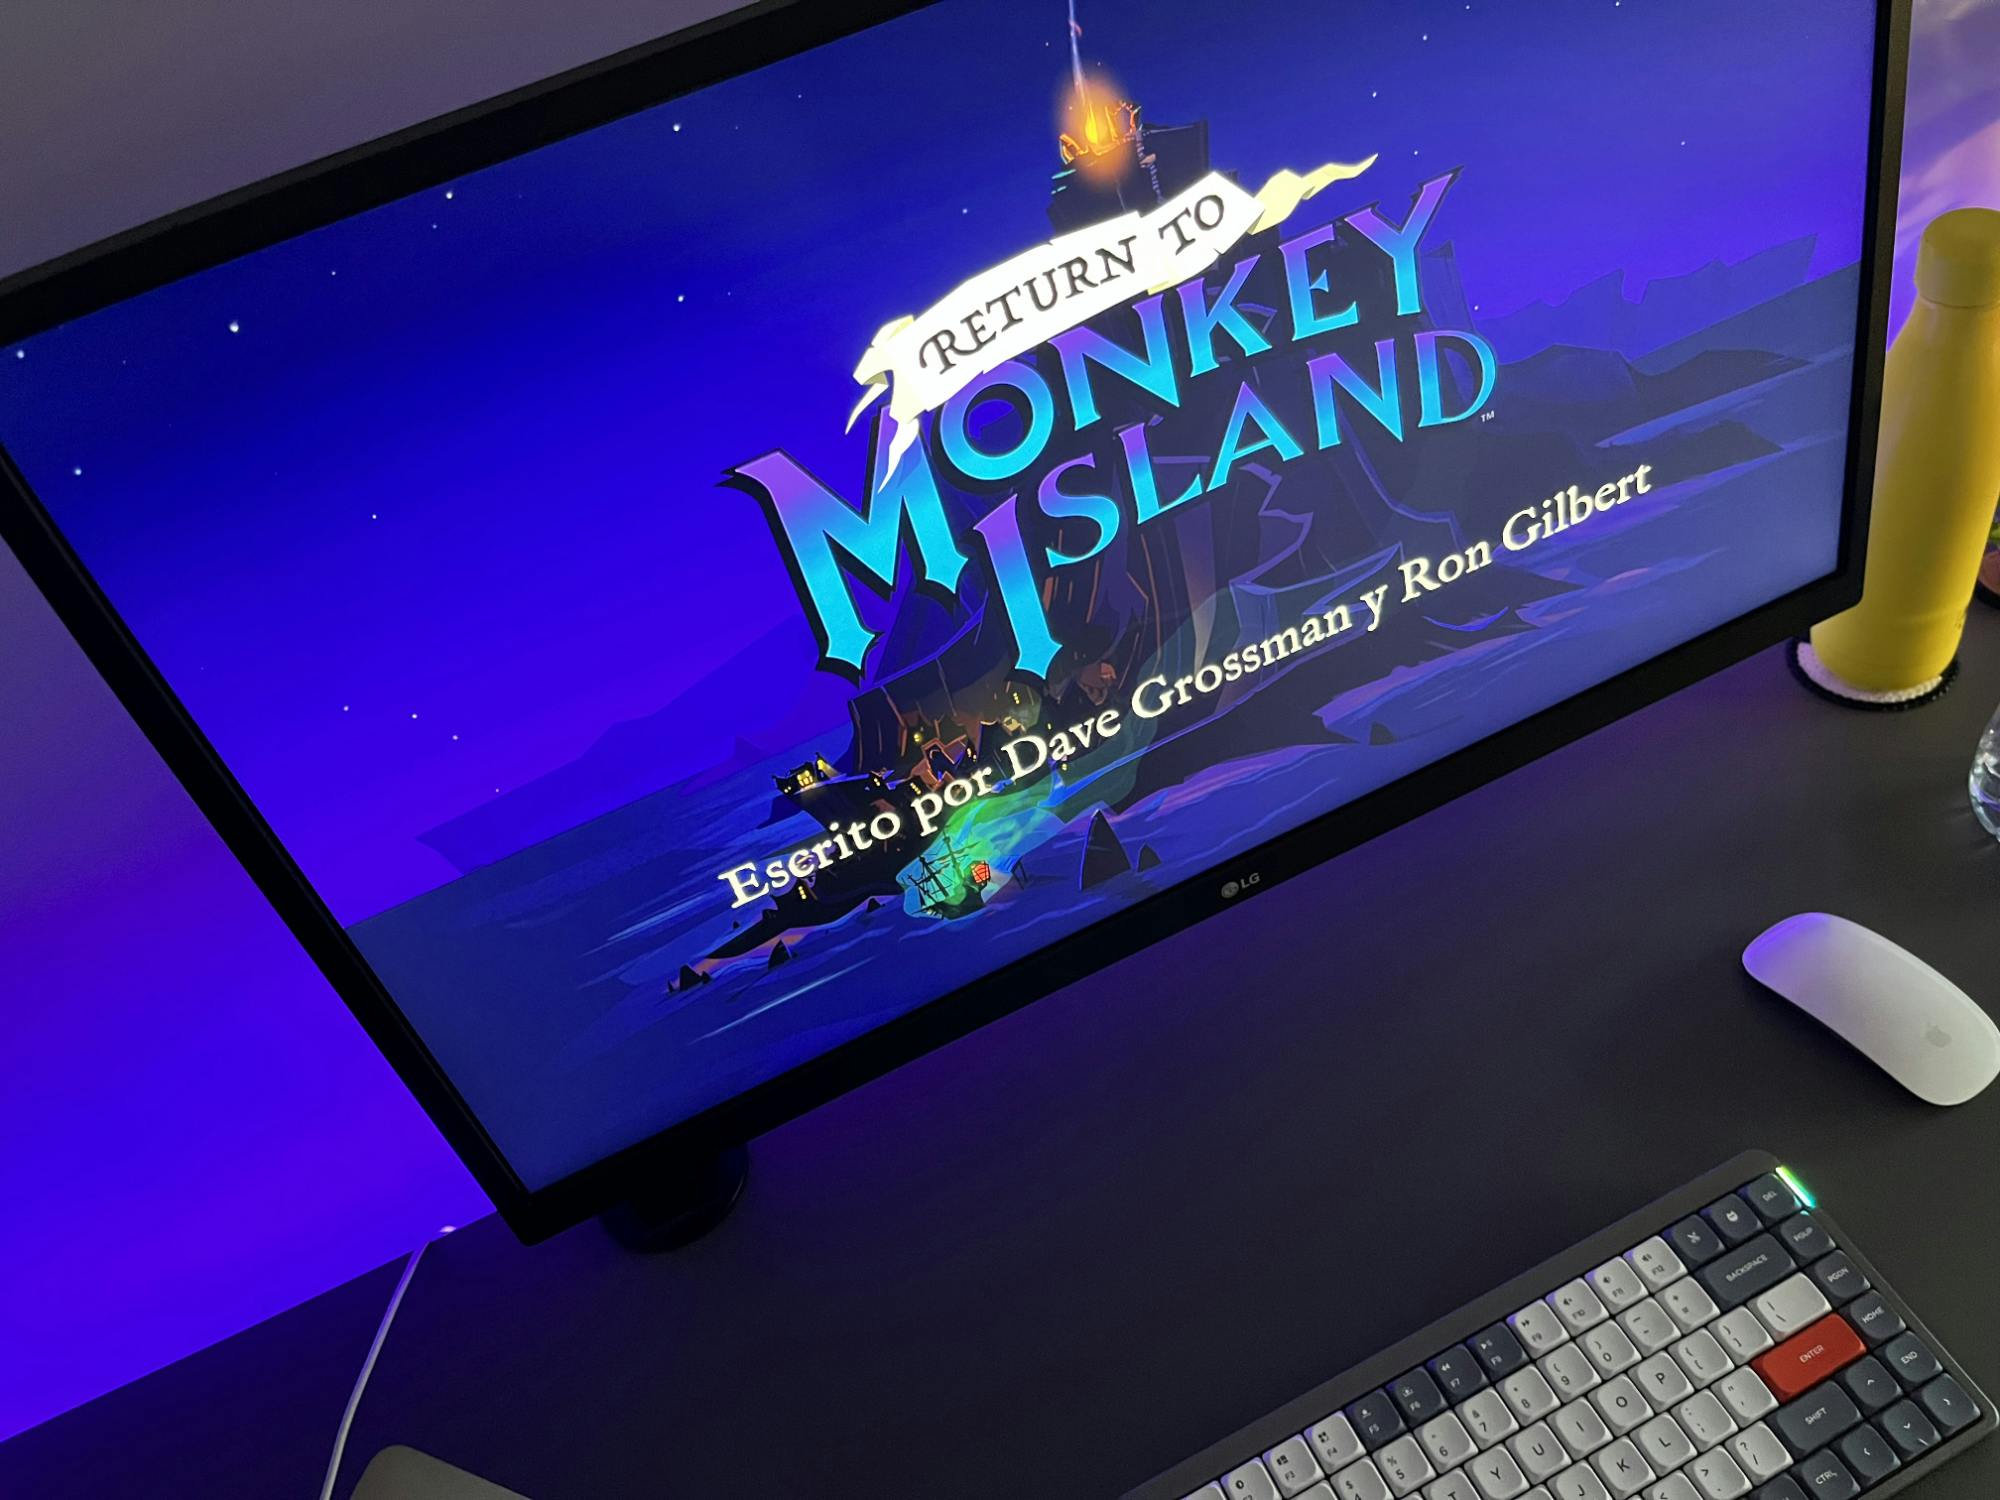 Fotografía de mi pantalla de ordenador mostrando los títulos de inicio del videojuego: Return to Monkey Island